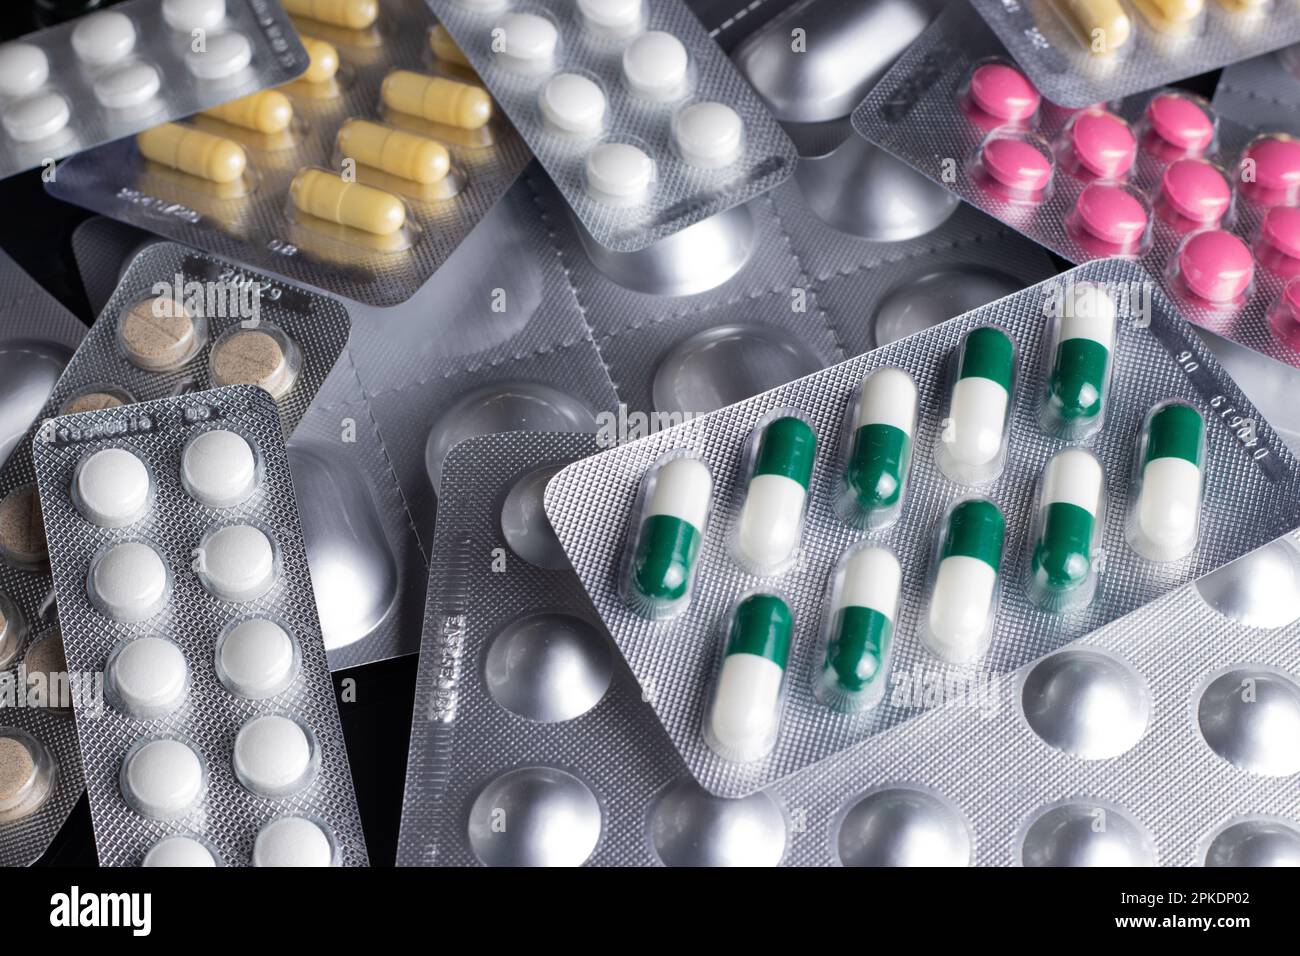 Les médicaments et les comprimés sous blister sont dispersés sur la table Banque D'Images